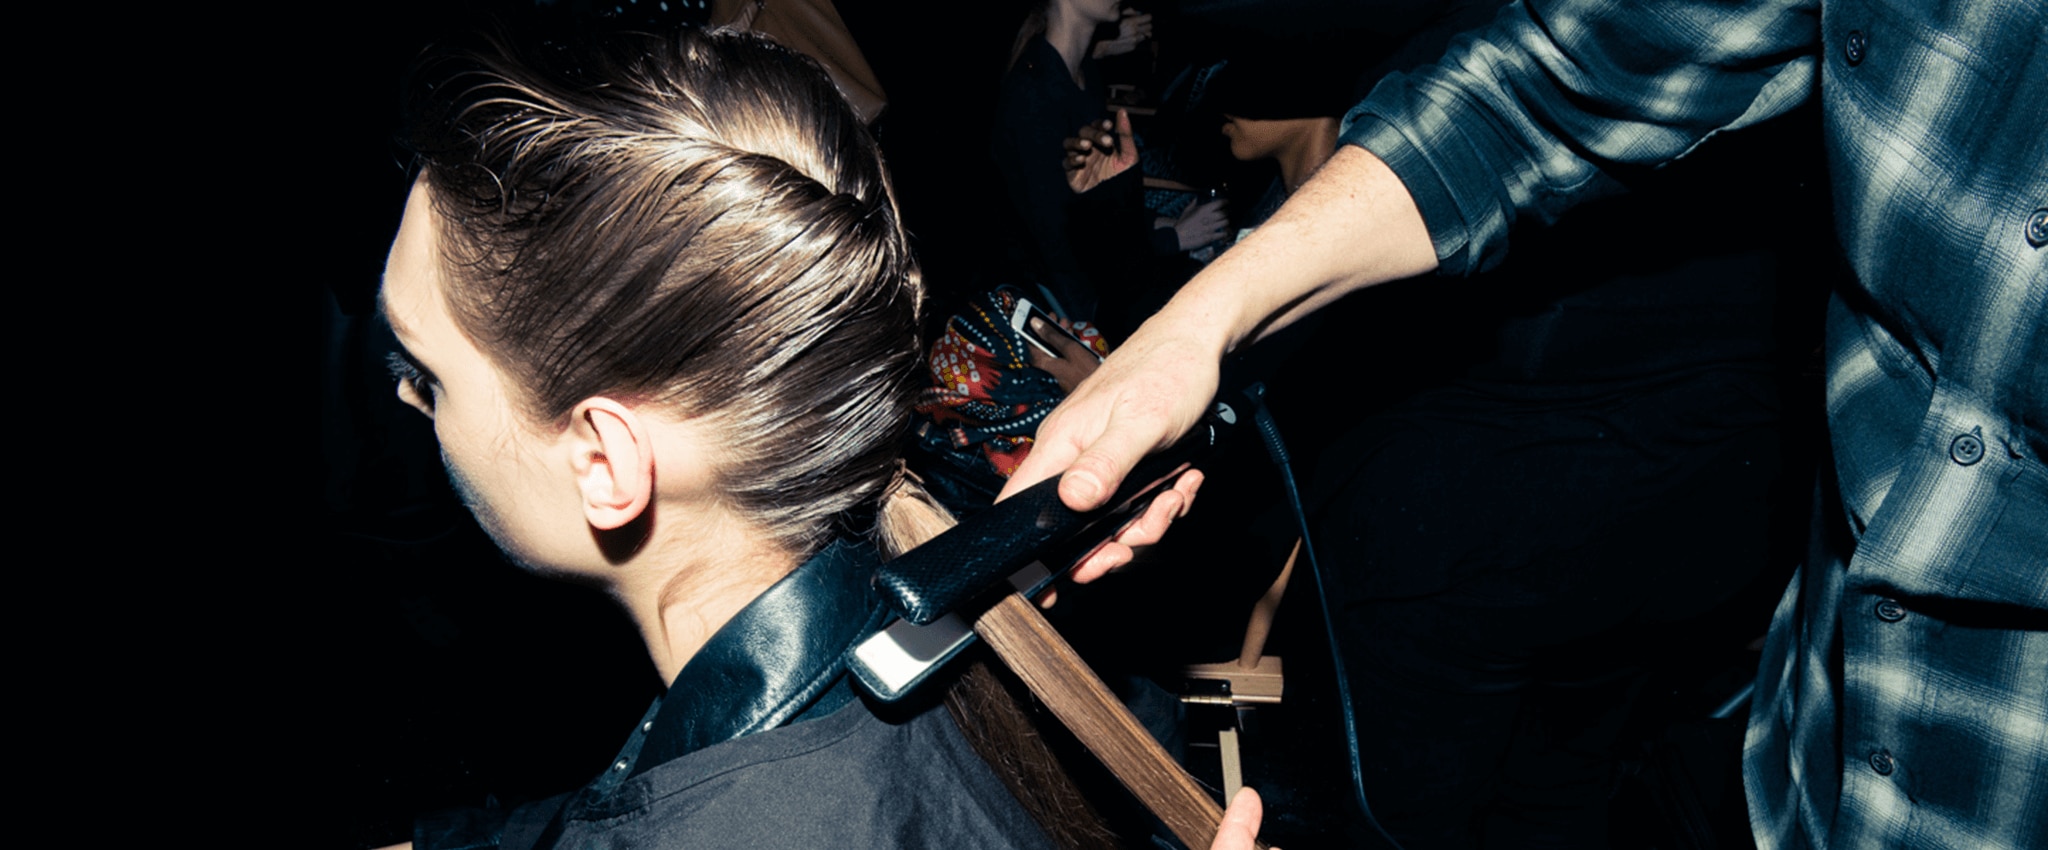 Κομμώτρια που χρησιμοποιεί εργαλείο styling θερμότητας σε μια τούφα από τα μαλλιά ενός μοντέλου